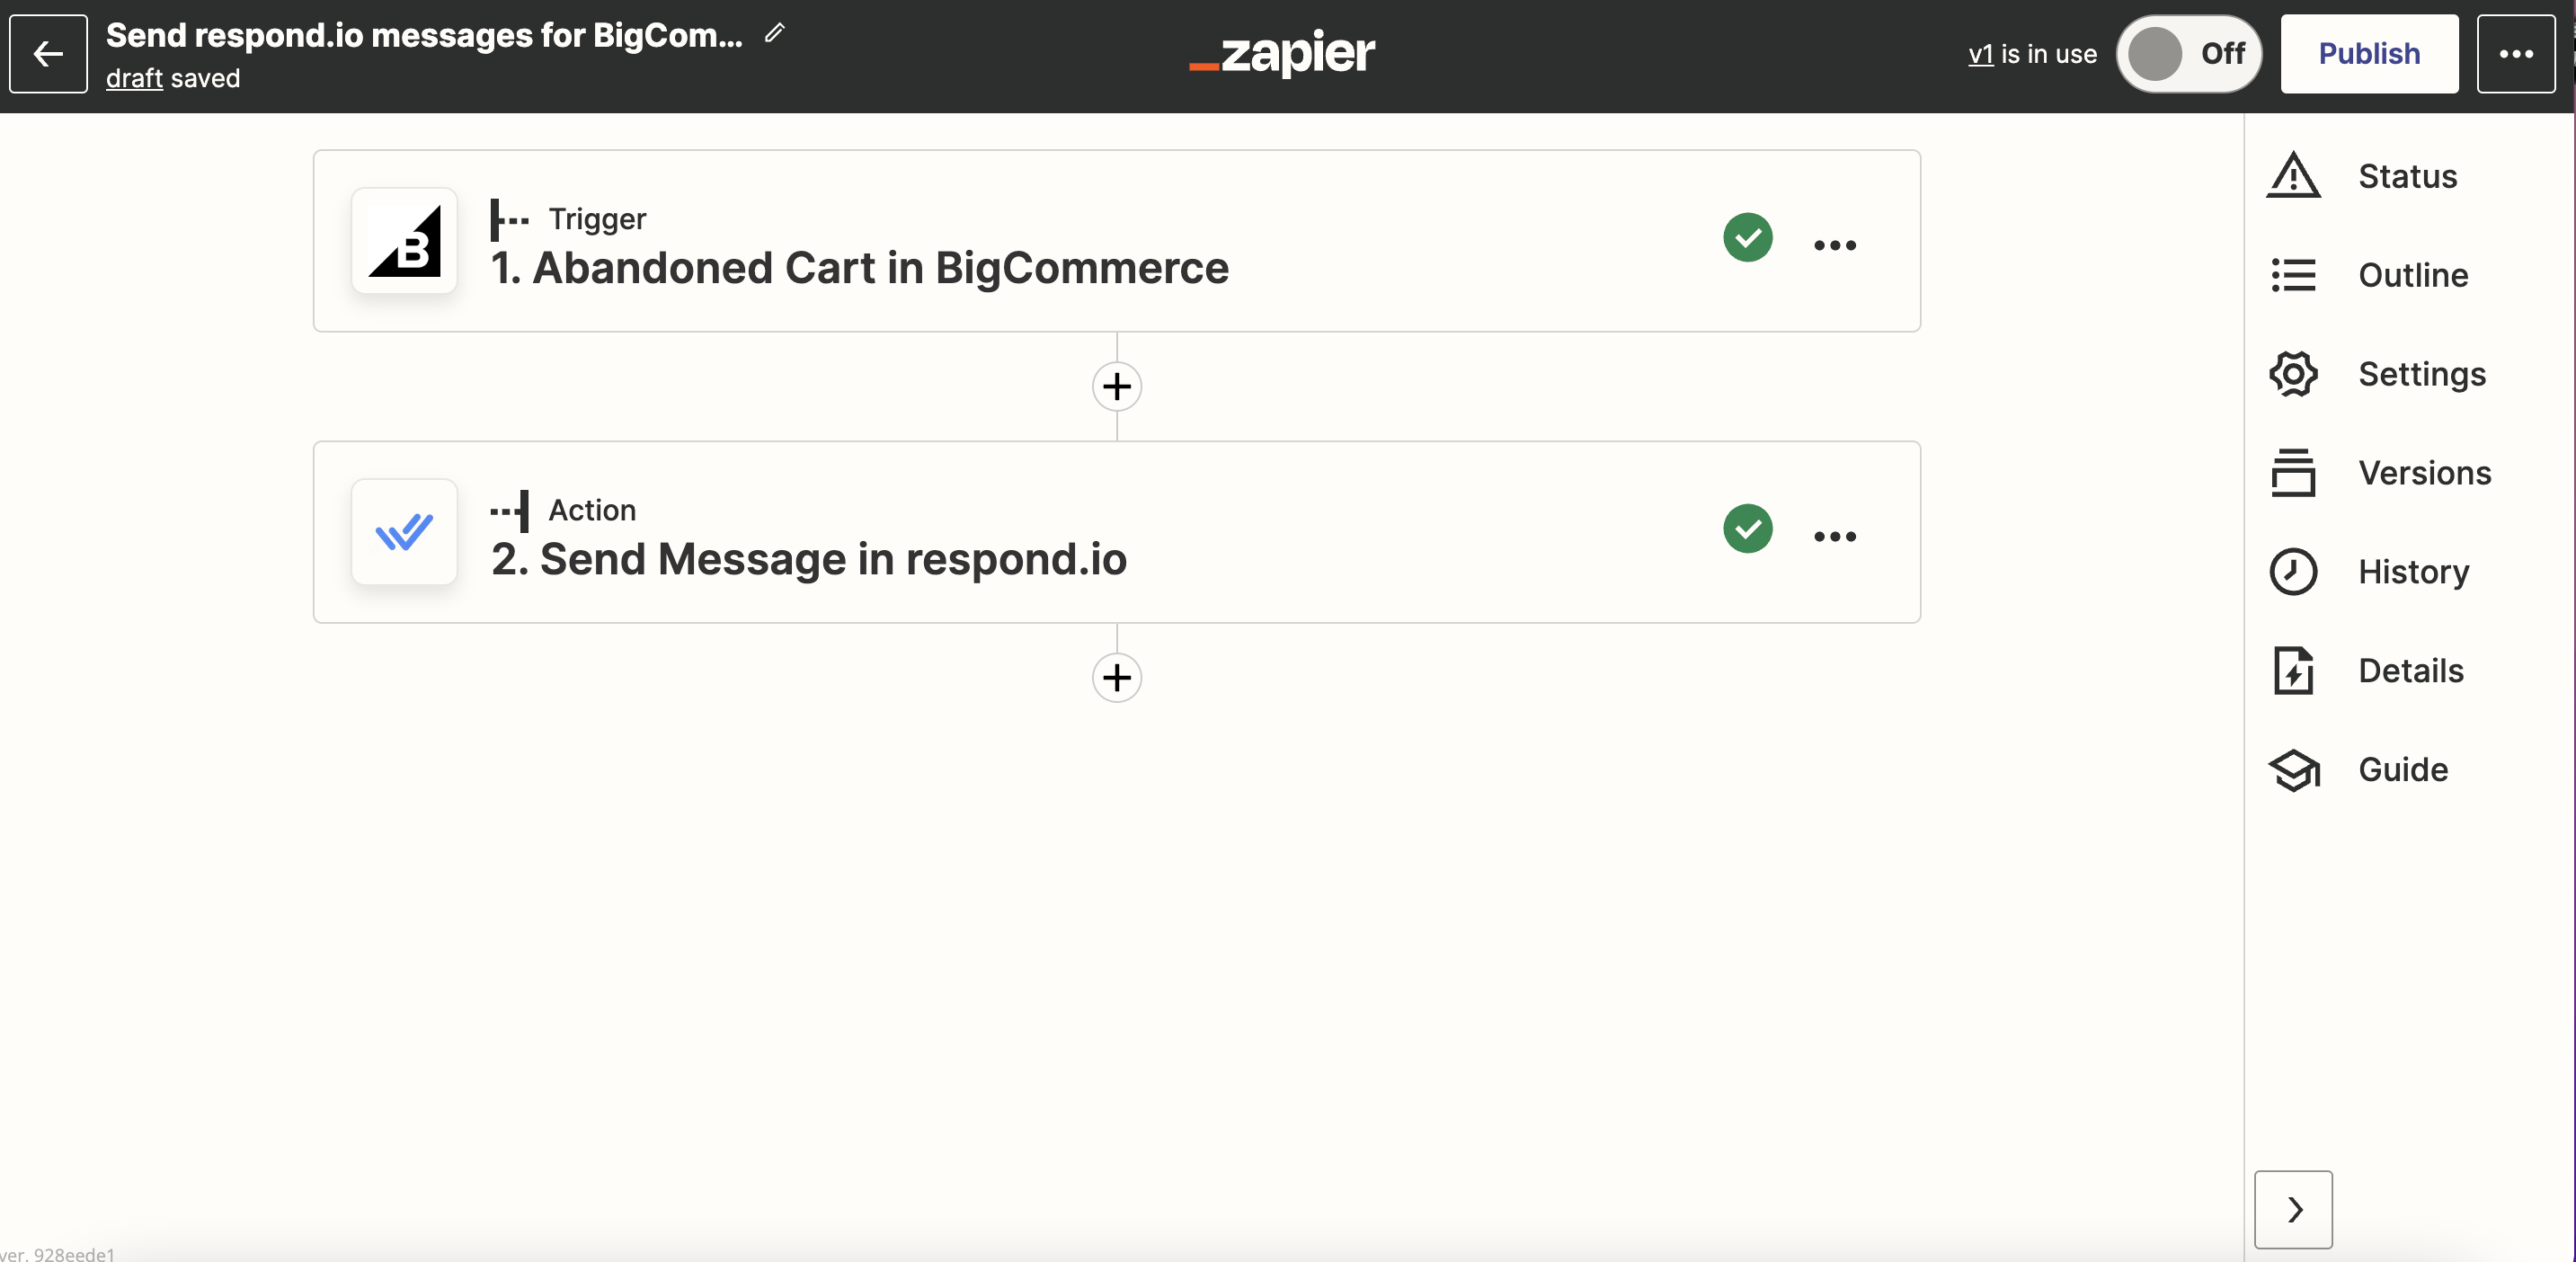 screenshot of Zapier template to send abandoned cart messages